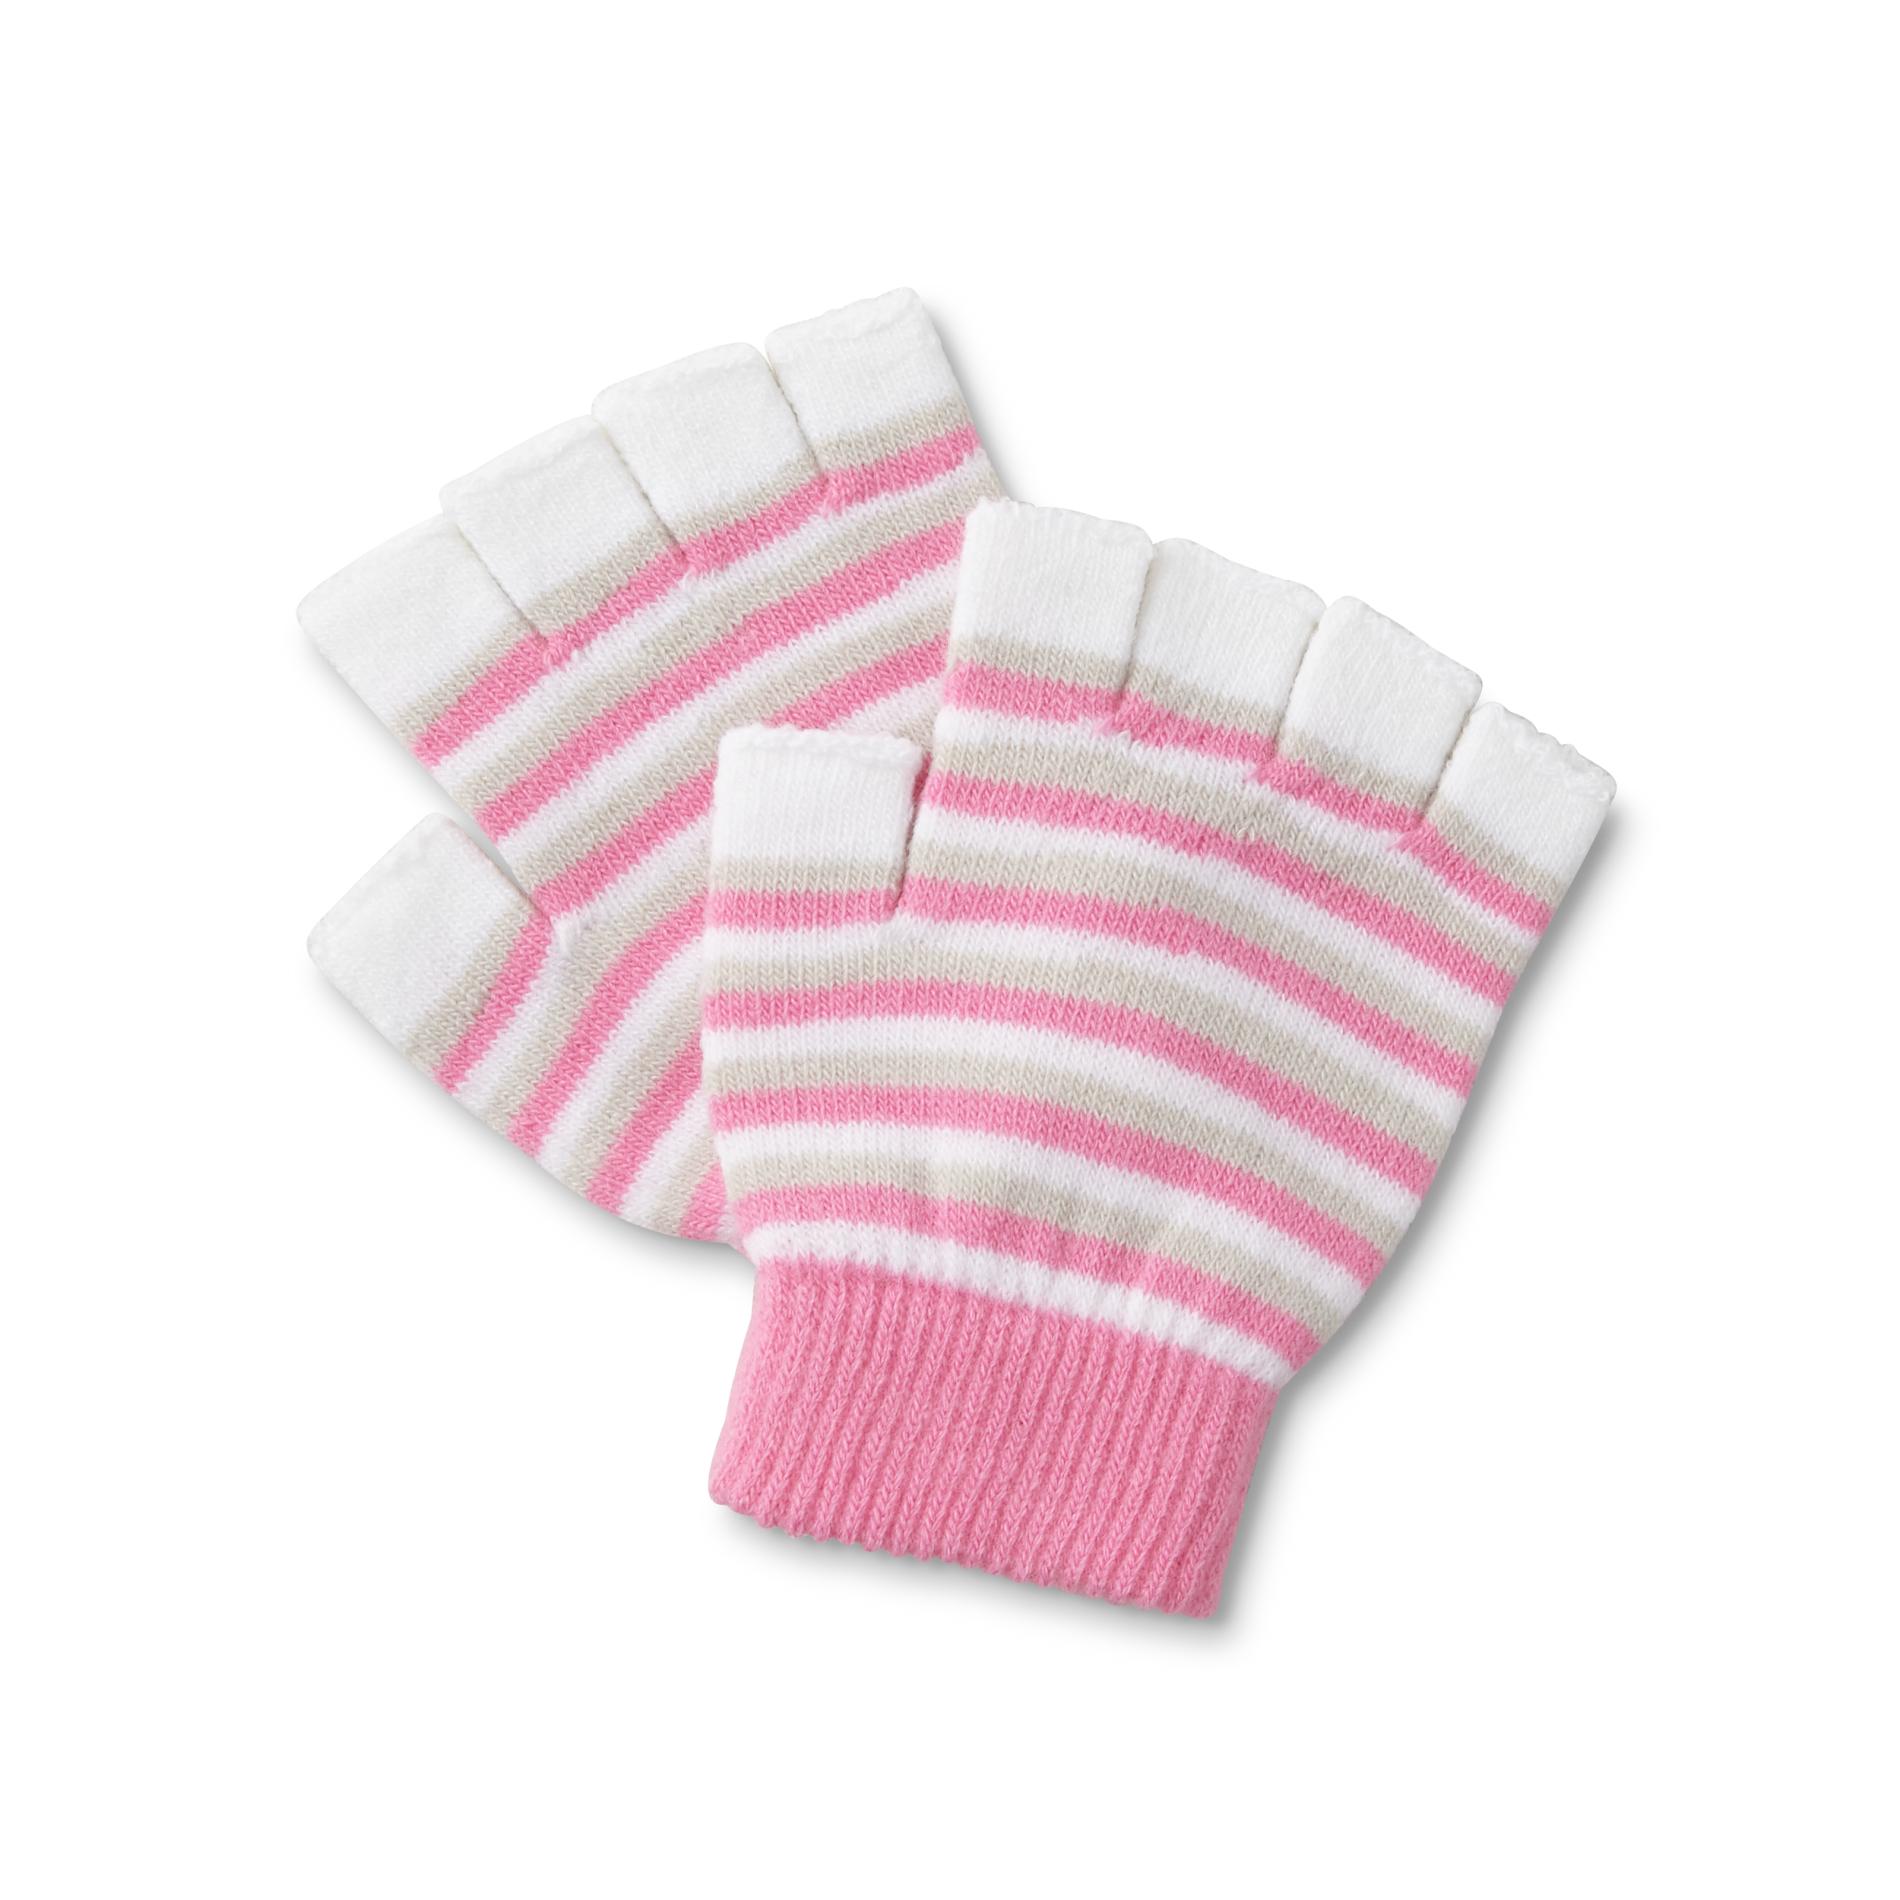 Women's Fingerless Gloves - Striped